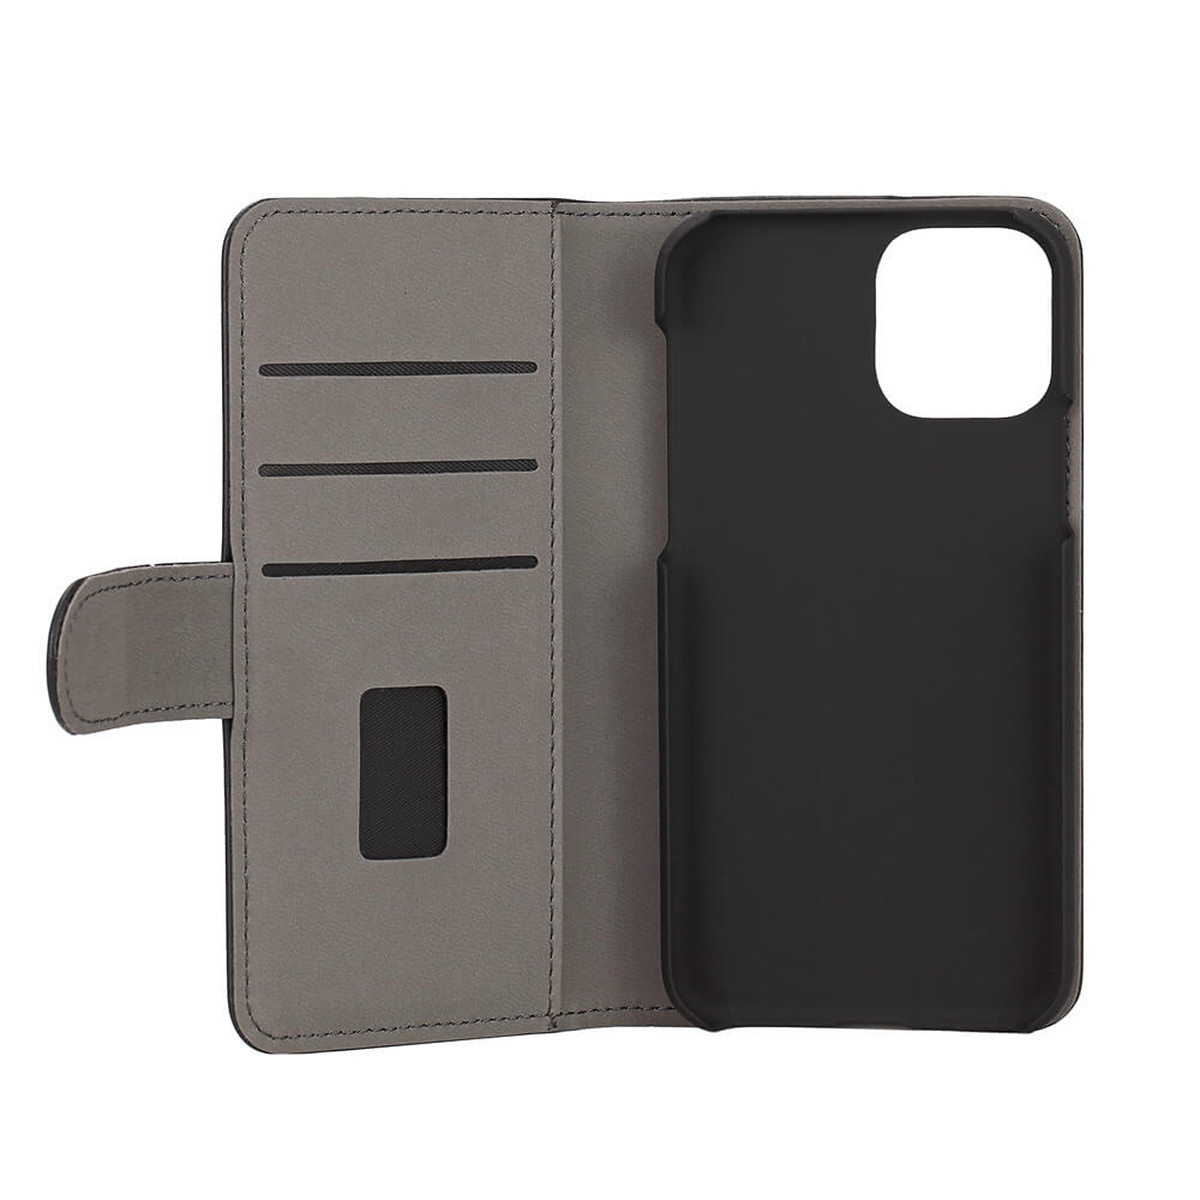 Gear plånboksväska, iPhone 11 Pro, svart